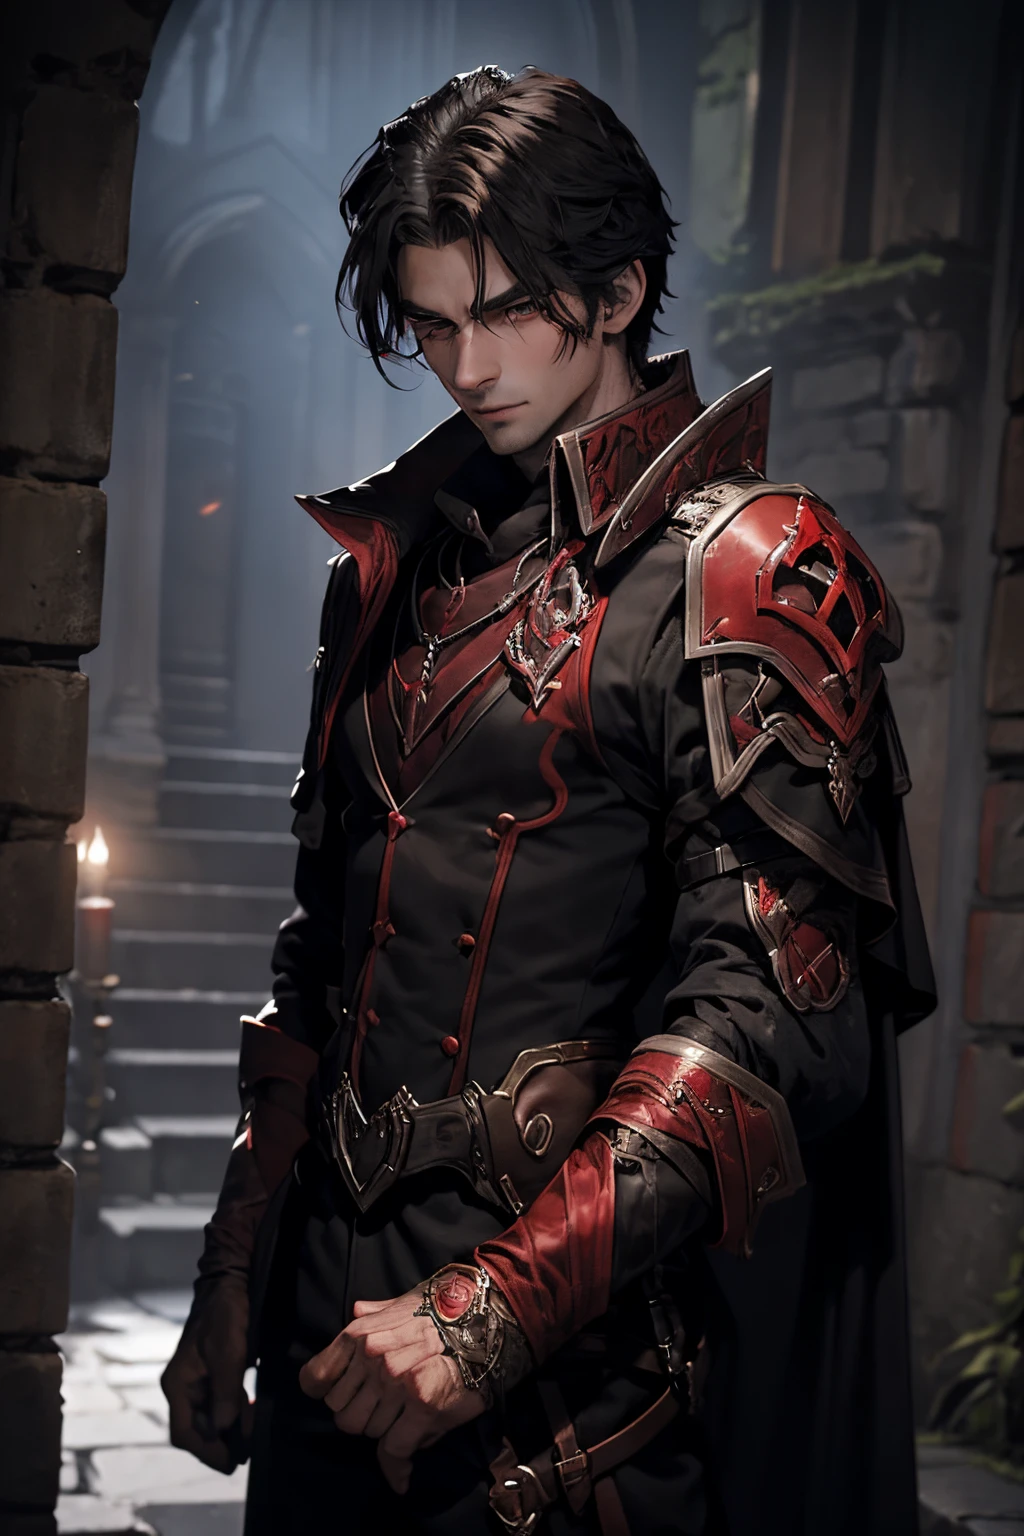 엄숙한 남성 담피르 혈액 사냥꾼이 밤 사냥을 준비하고 있습니다.. 독특한 뱀파이어 특성을 지닌 캐릭터를 상상해보세요, 어두운 검정색과 빨간색 갑옷을 입고 두 개의 붉은 검을 들고